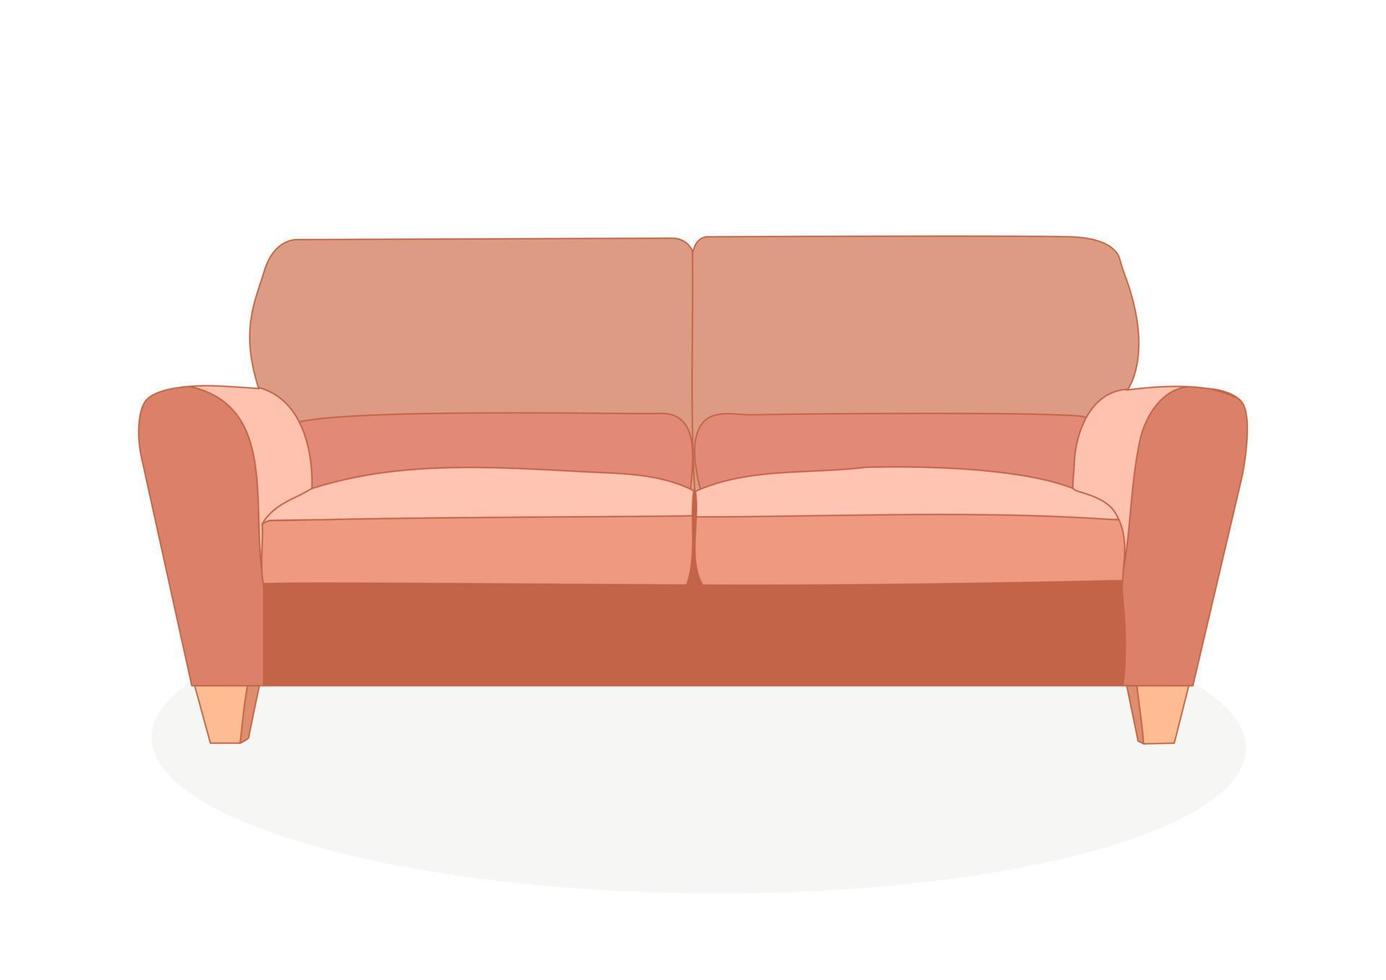 sofá elegante confortável na moda. objeto, modelo de mobiliário. estilo plano. vetor